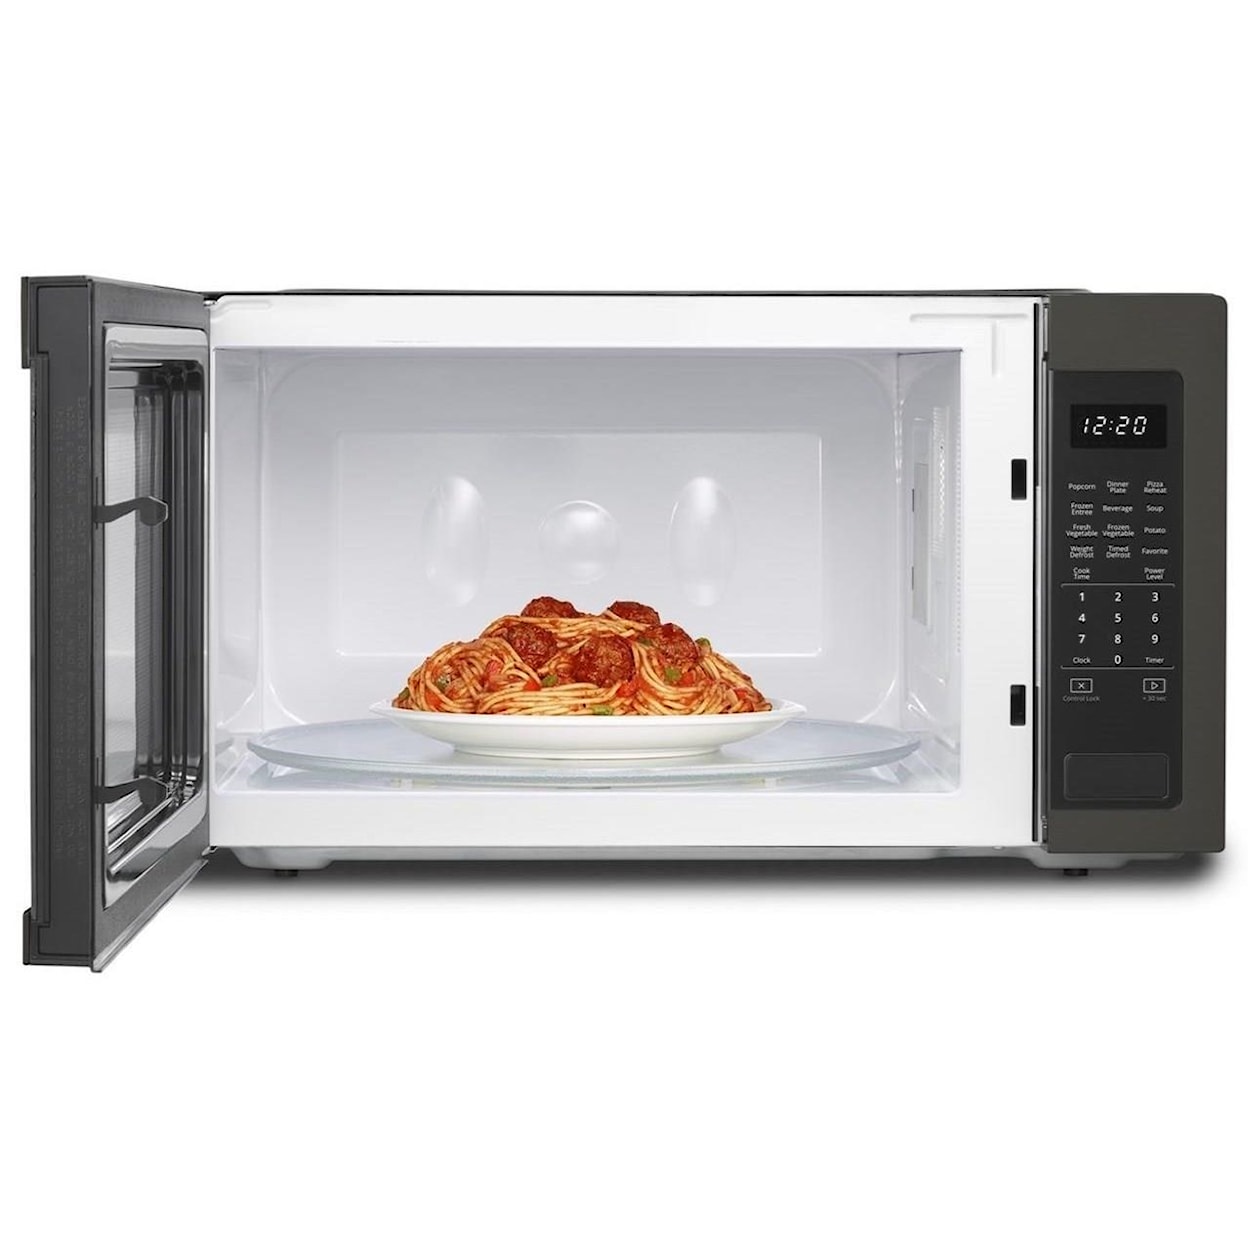 Whirlpool Microwaves - Whirlpool 2.2 cu. ft. Countertop Microwave